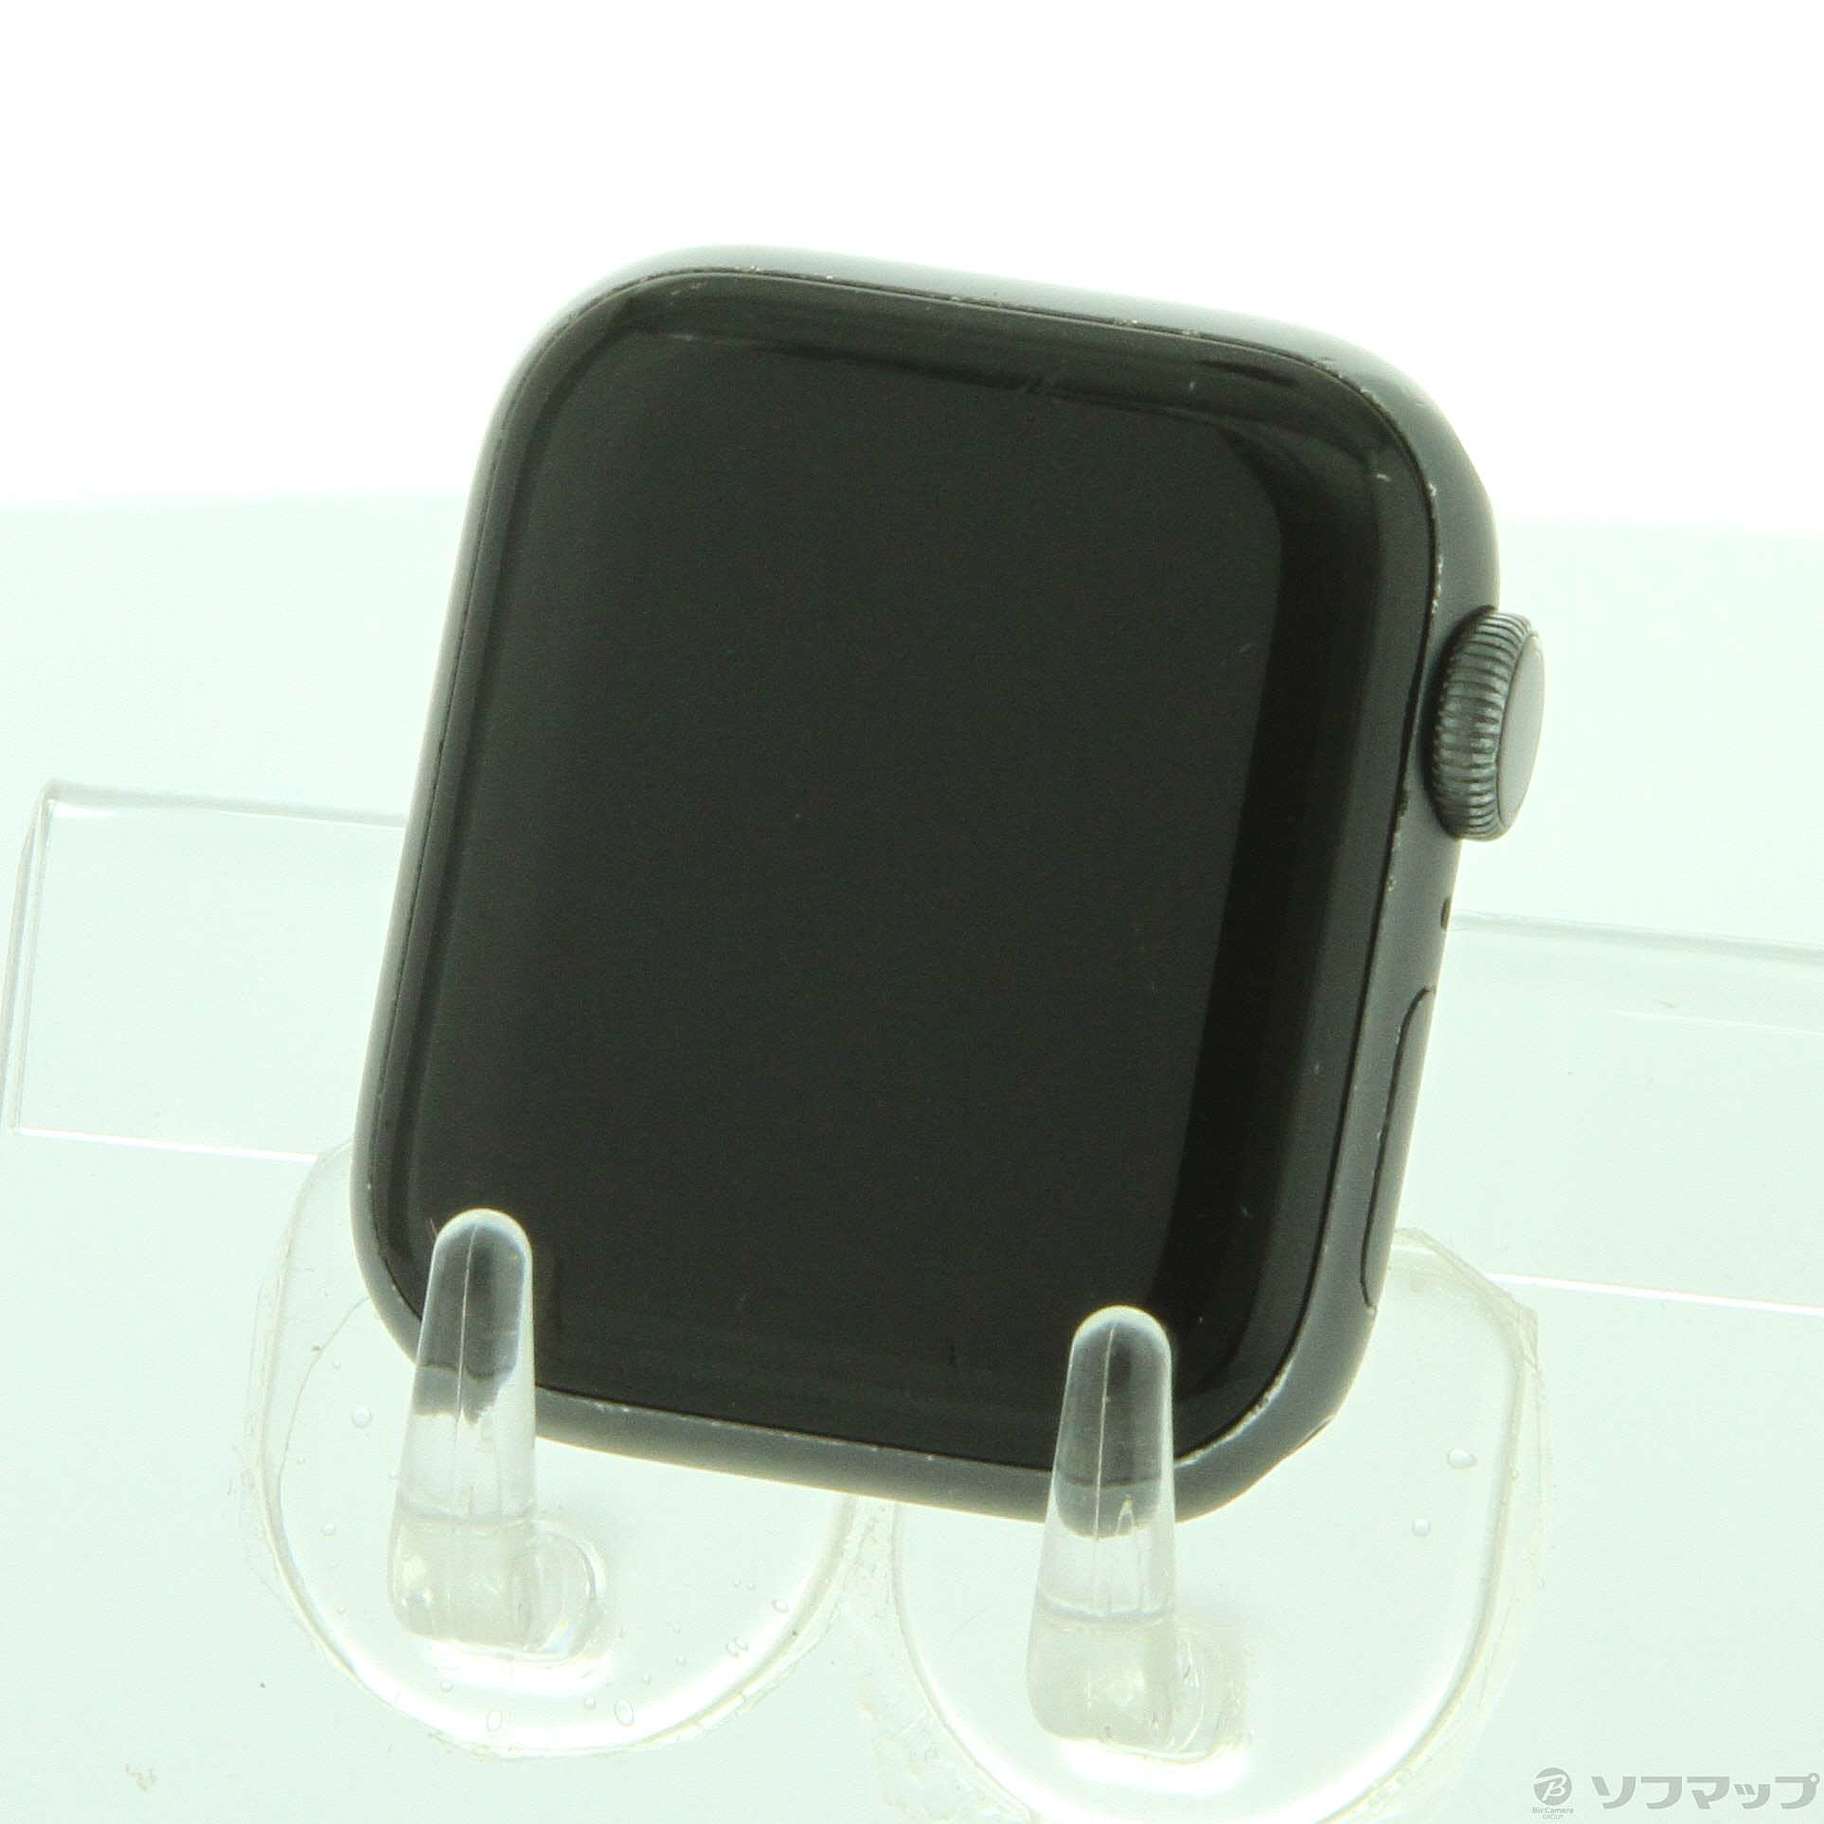 中古】Apple Watch Series 4 GPS 40mm スペースグレイアルミニウム ...